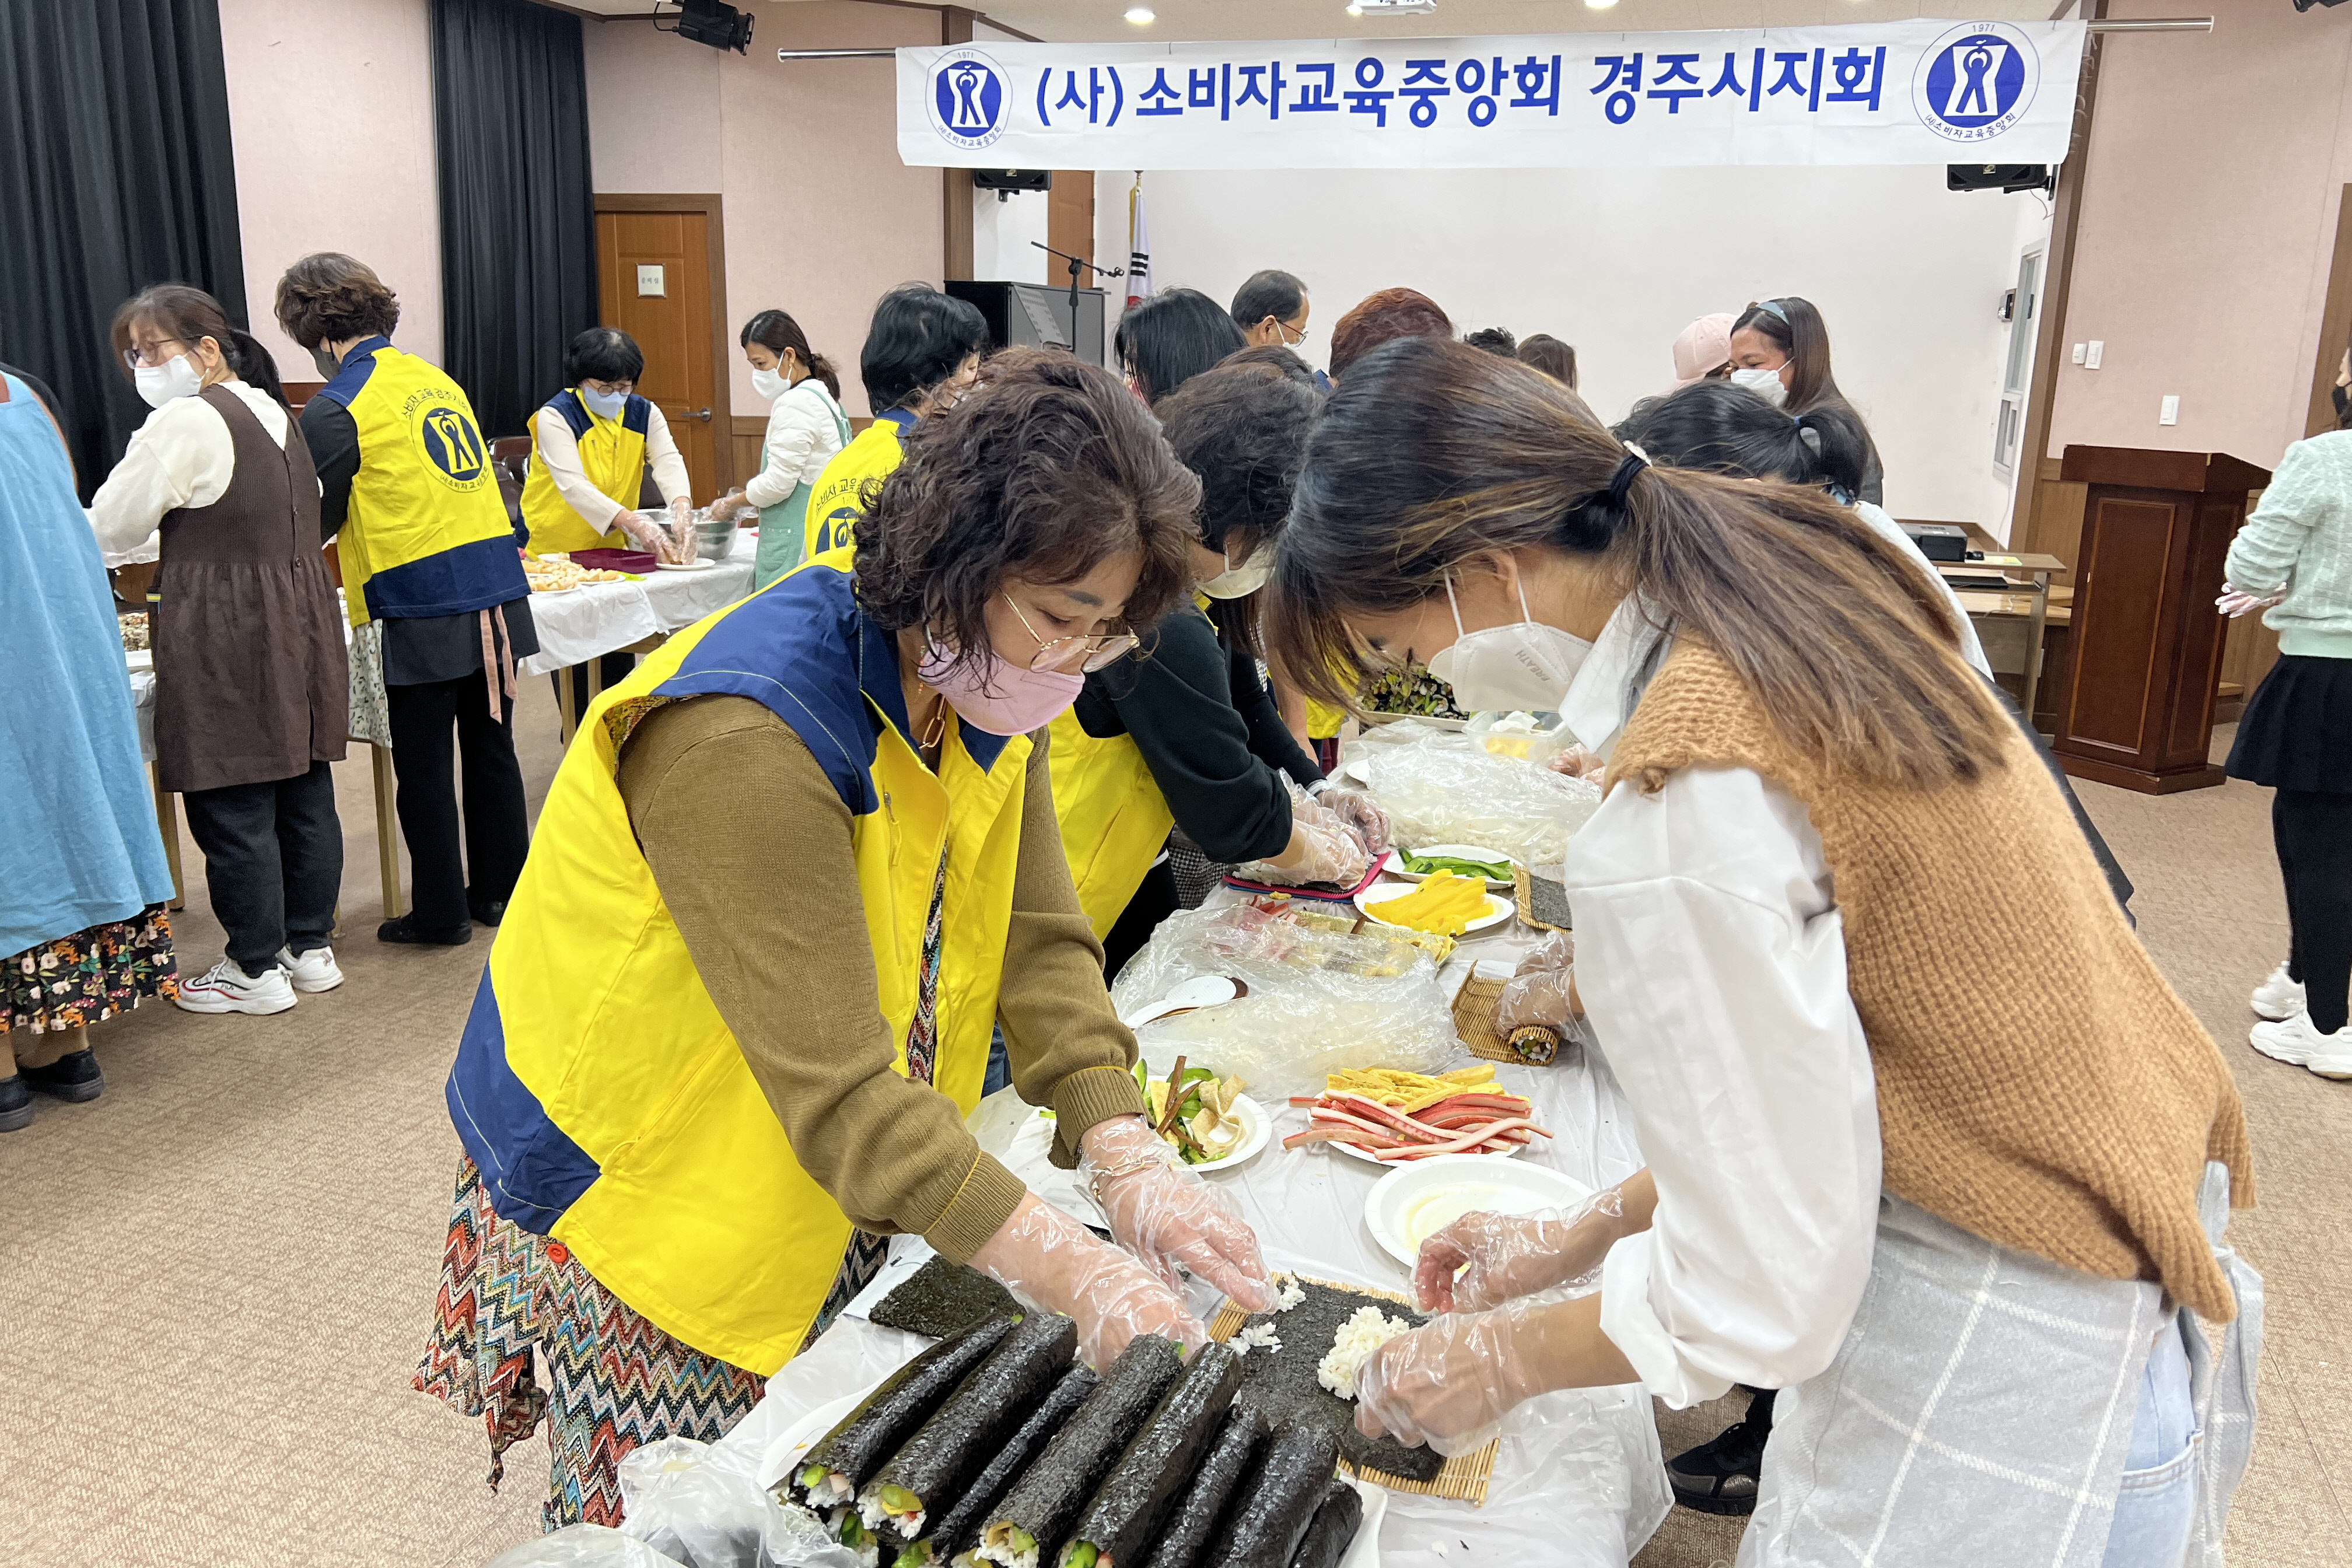 21일 경주문화원 안강교육장에서 진행된 다문화 가정과 함께하는 요리교실 모습